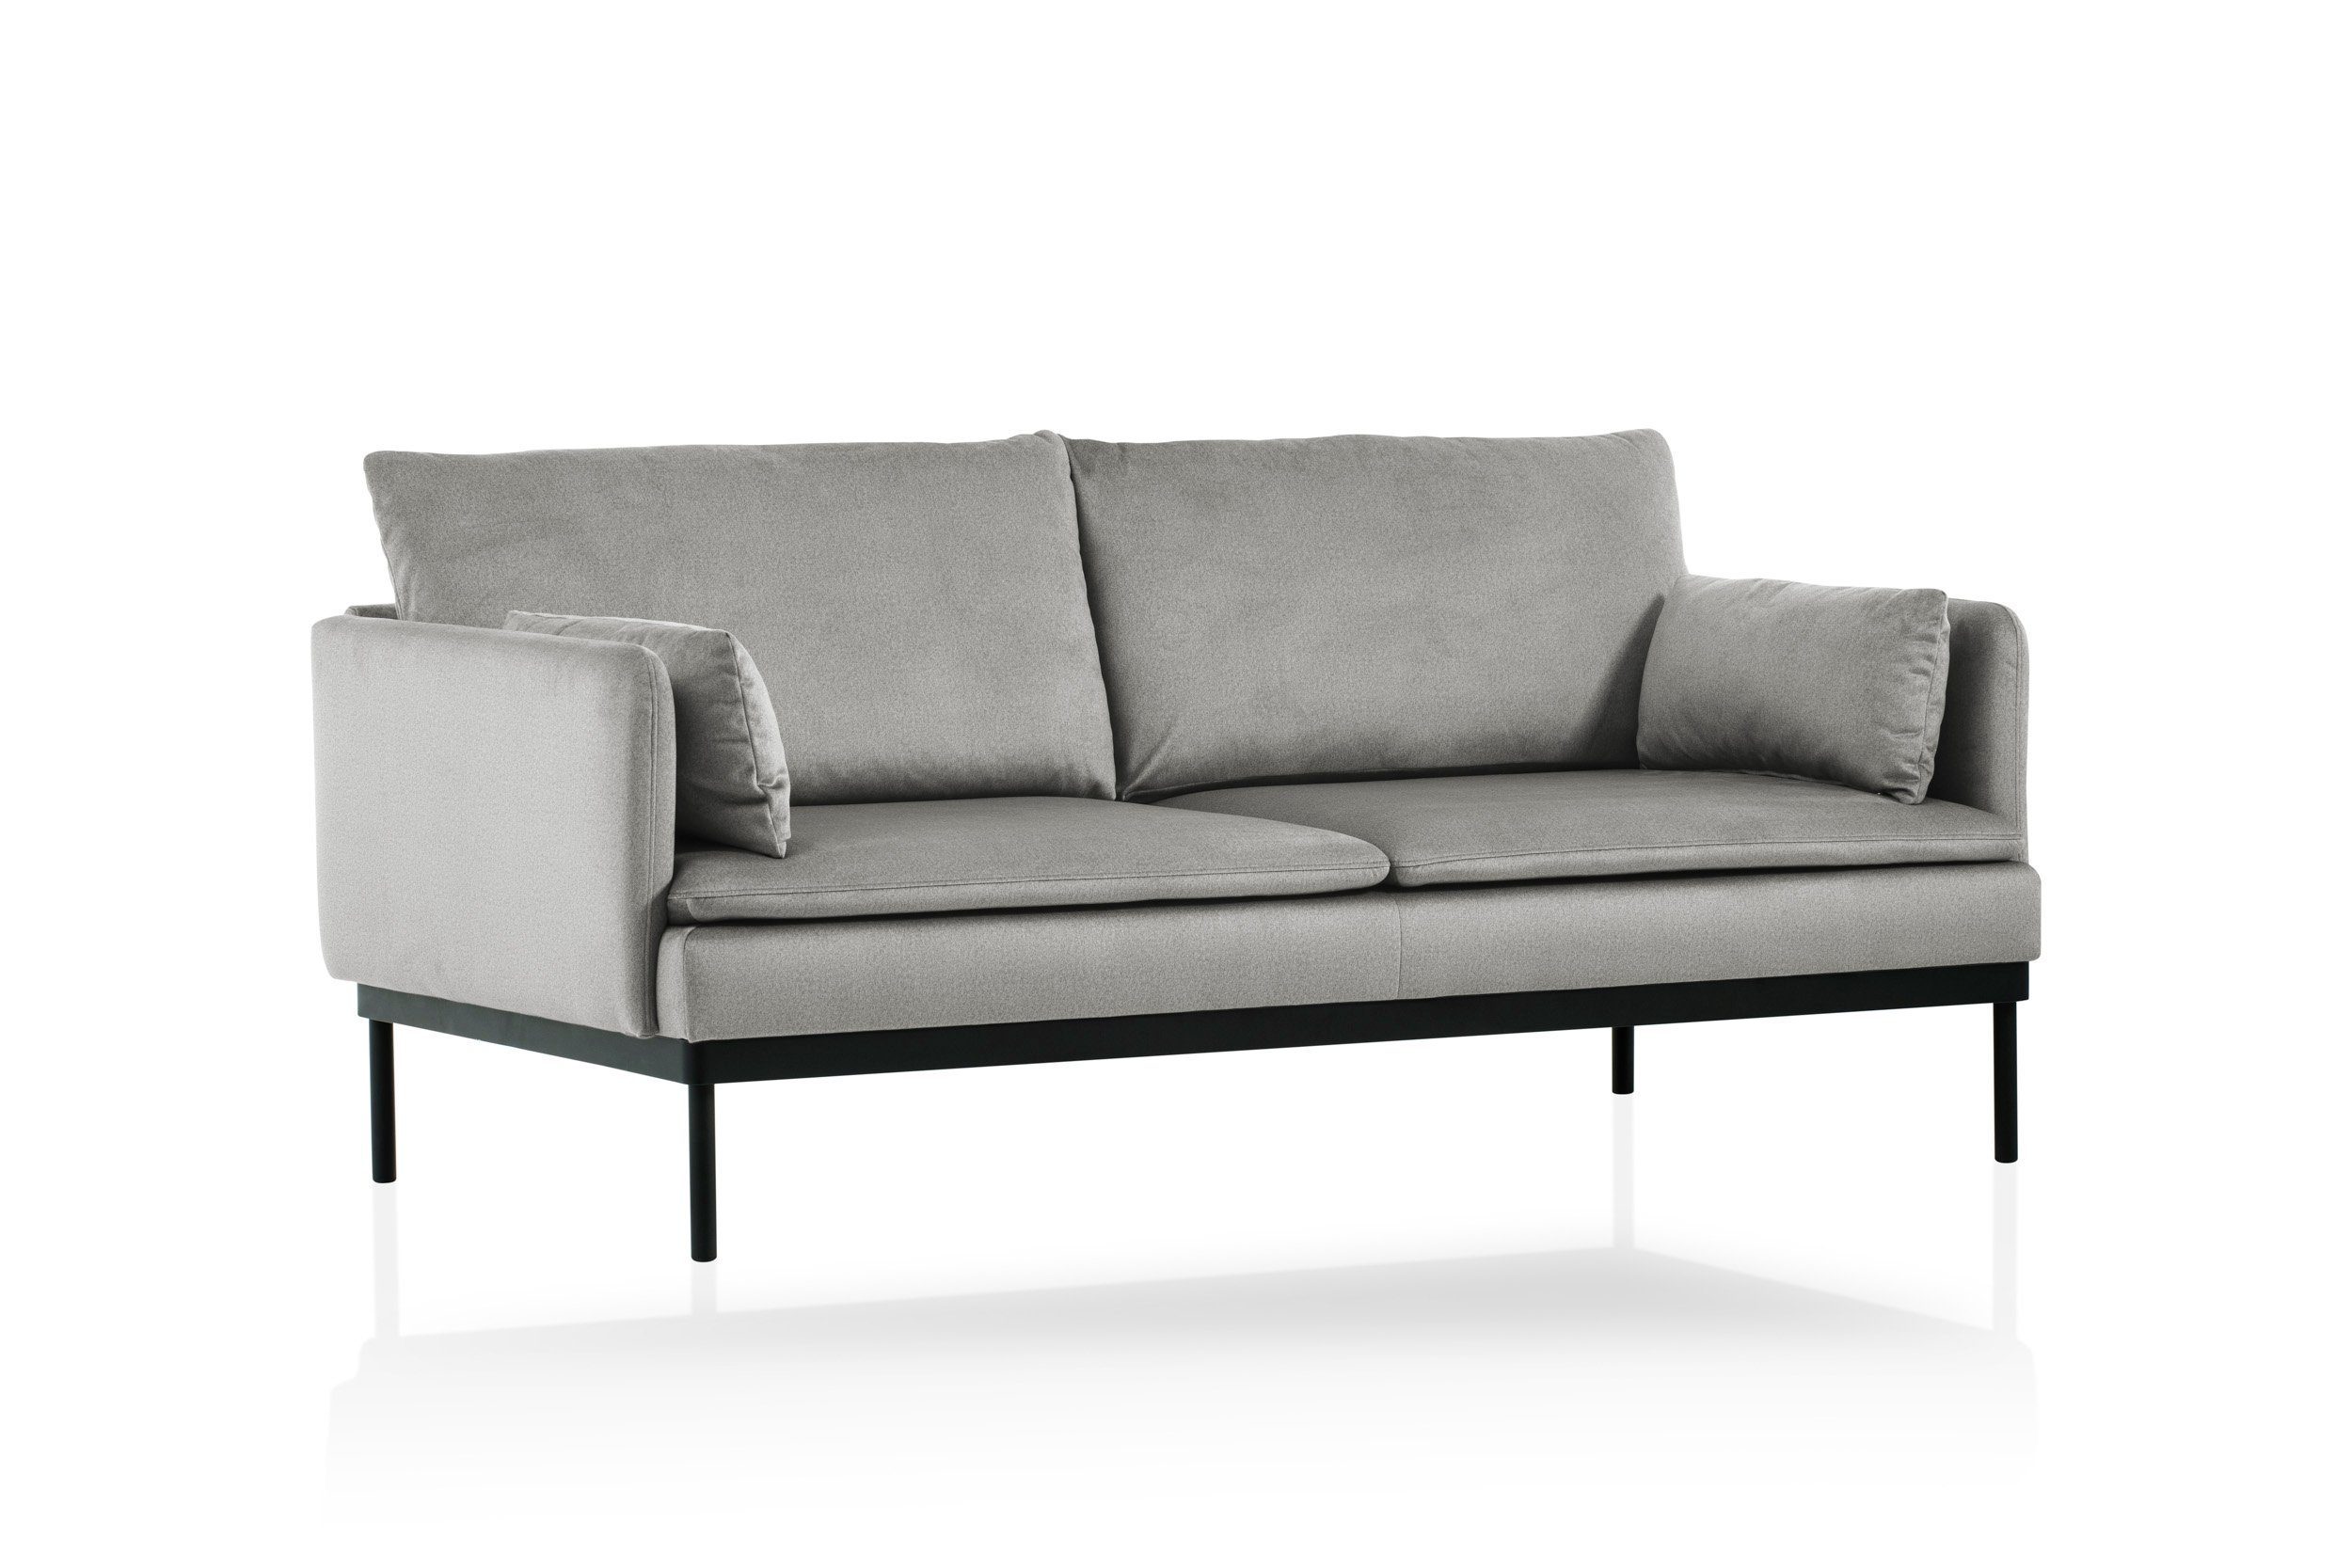 Velours-Stoff, weicher Europe hochwertige skandinavischen Design, besonders Grau im 2-Sitzer Einzelsofa XDREAM Verarbeitung, Made modernen, Montana, in